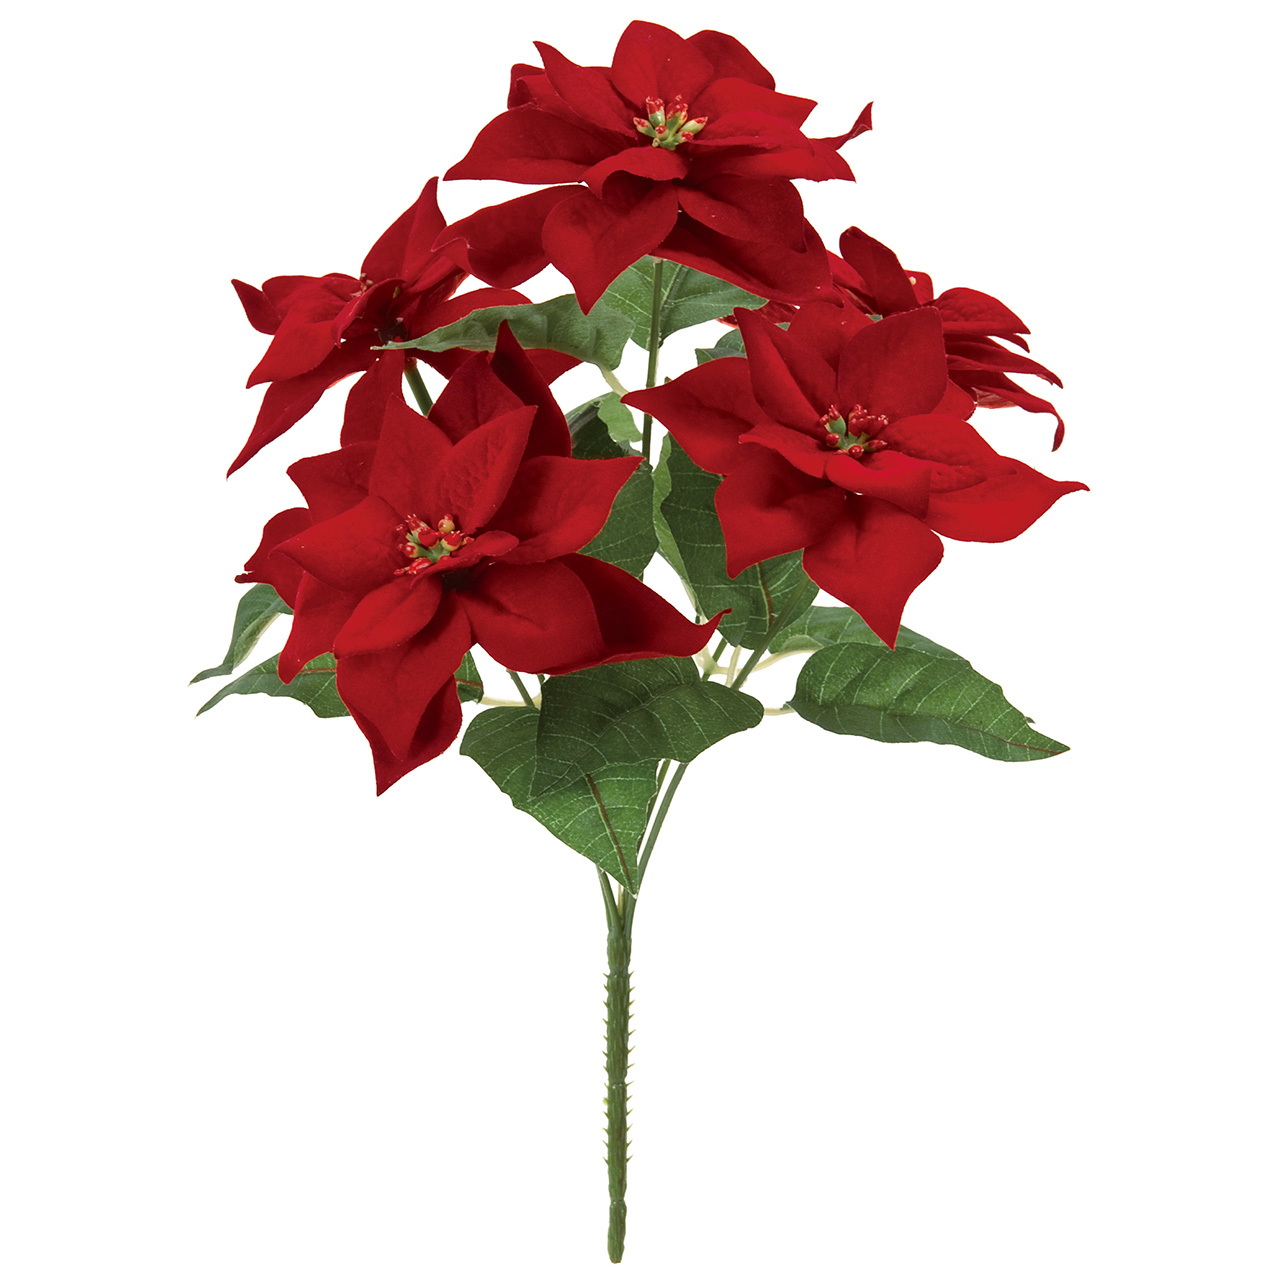 マイフラ 通販 Magiq ミニポインセチアブッシュ レッド アーティフィシャルフラワー 造花 クリスマス Fx 003 3 レッド Magiq アーティフィシャルフラワー 造花 全国にmagiq 花器 花資材などをお届けします